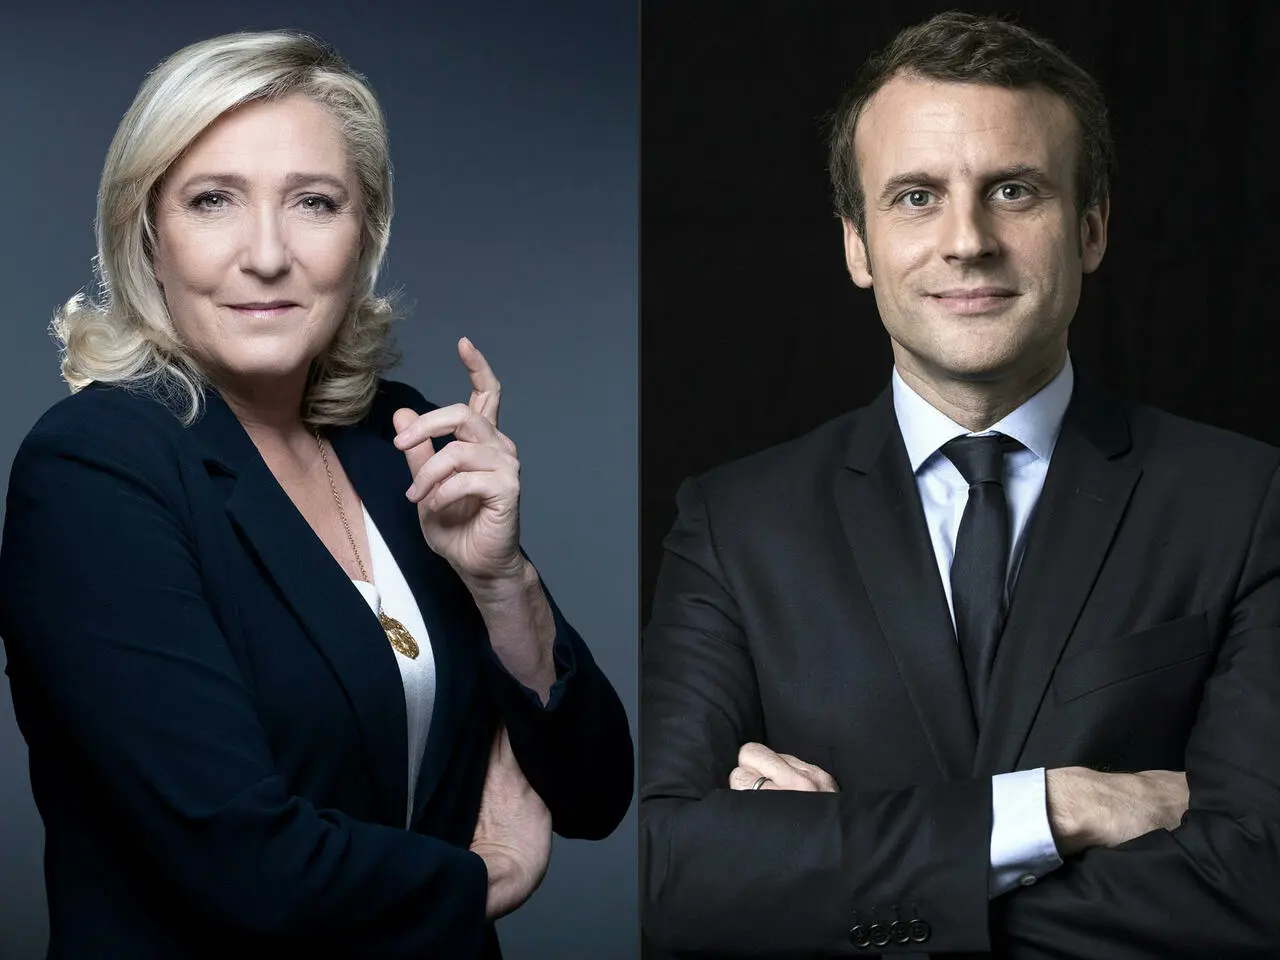 法国总统马克龙自觉厚黑胸毛照被网友辱弄… 大众：这是大心计啊